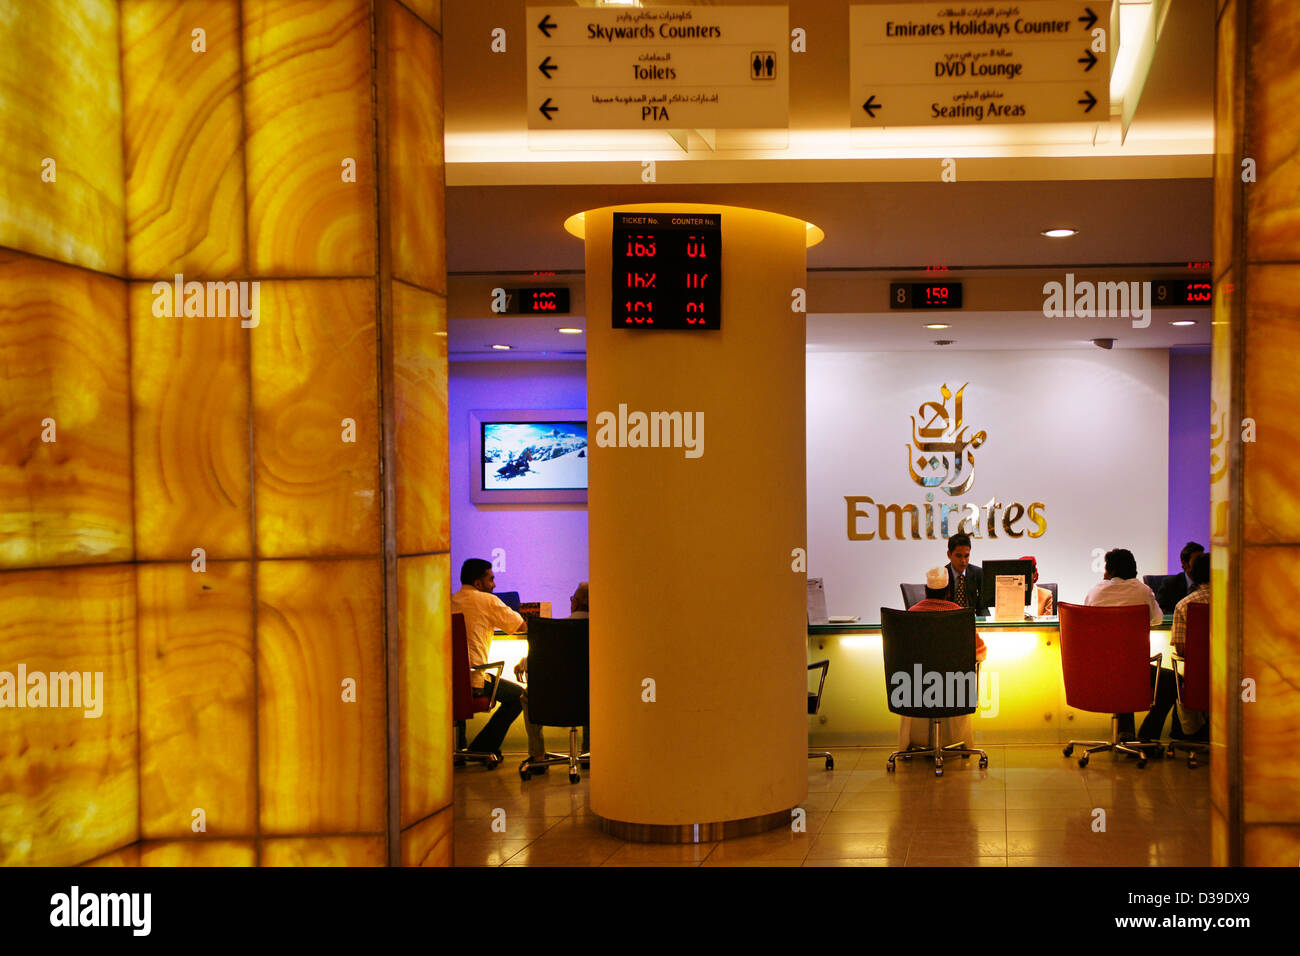 Uae Emirate Of Dubai Emirates Offices Stock Photo 53683569 Alamy